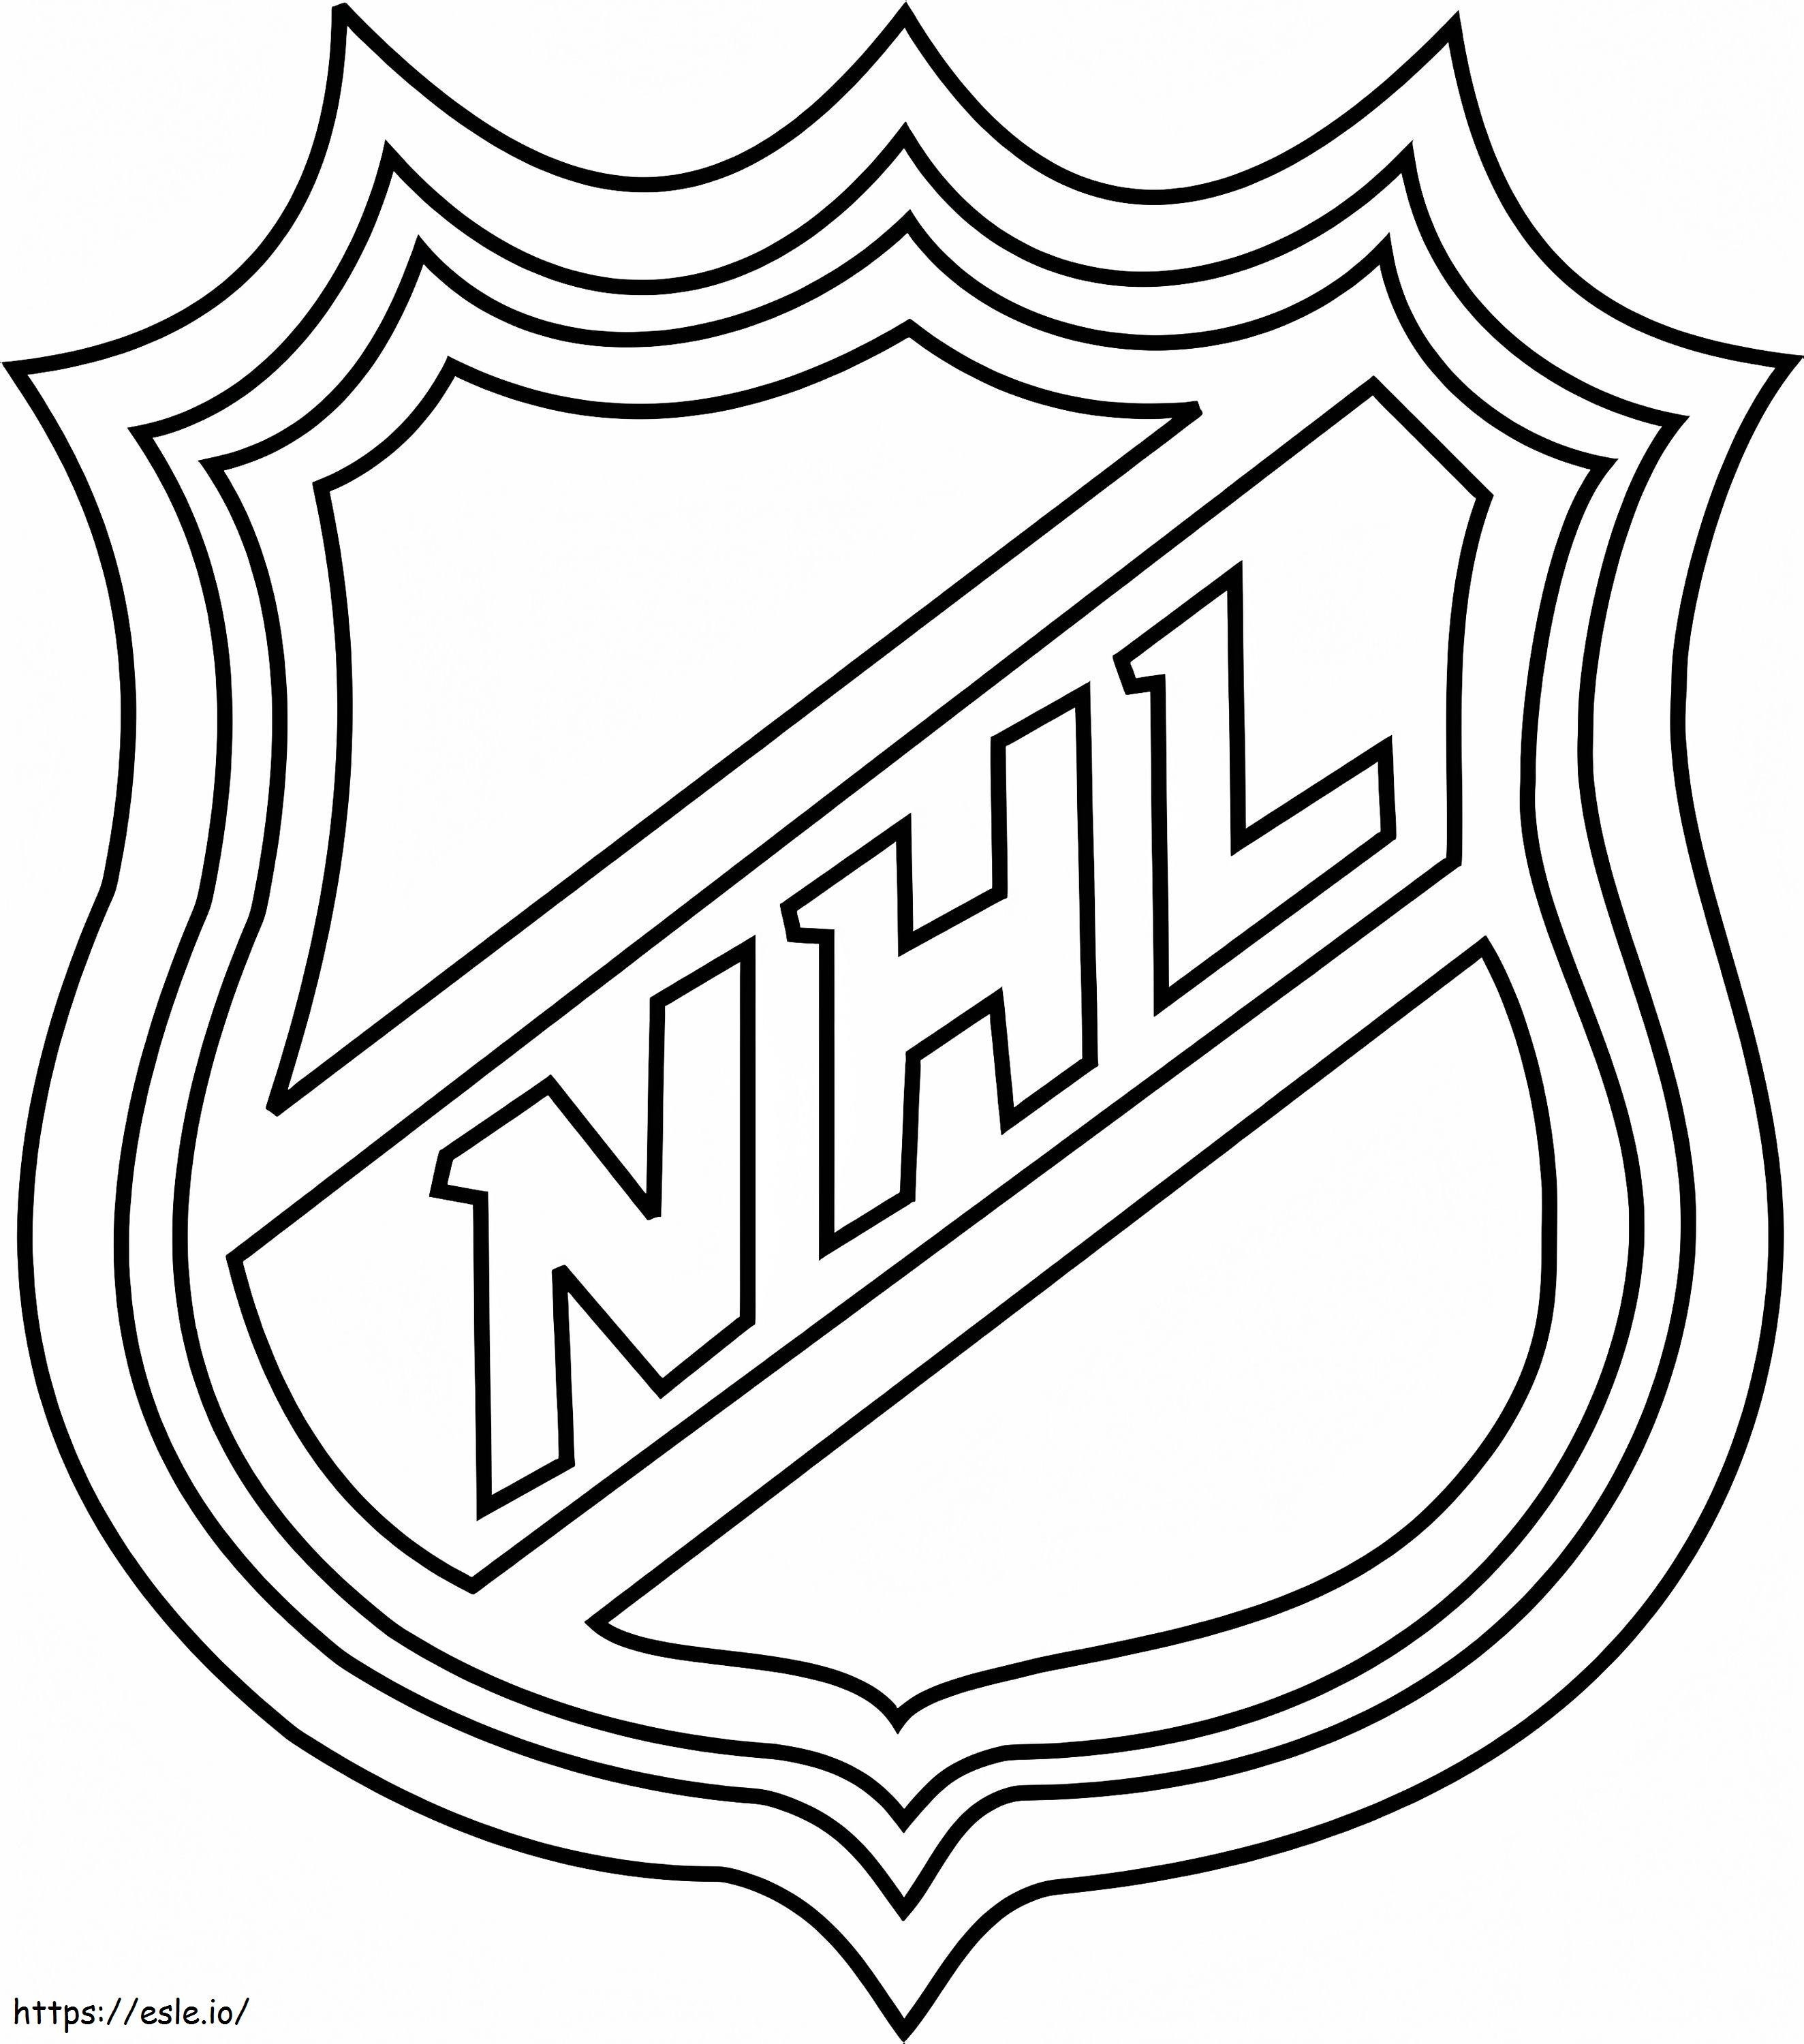 Logotipo de la NHL para colorear